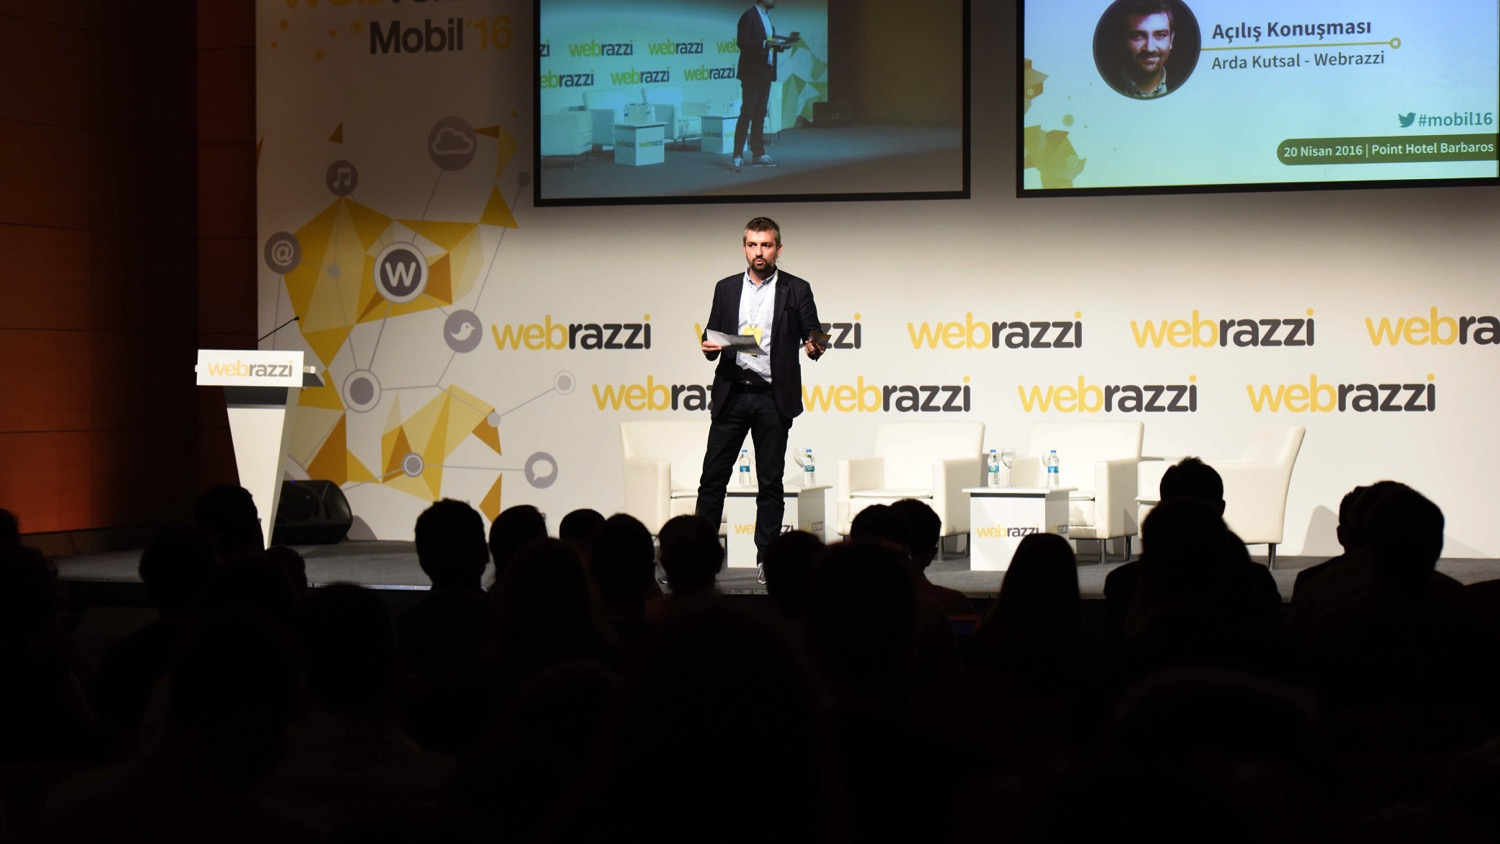 Arda Kutsal, Webrazzi Mobil 2016 sahnesinde 2017 yılı yenilikleri: 2 yeni temahk konferans (İnovasyon ve Developer) ile toplam 7 konferans gerçekleşhrilecek.